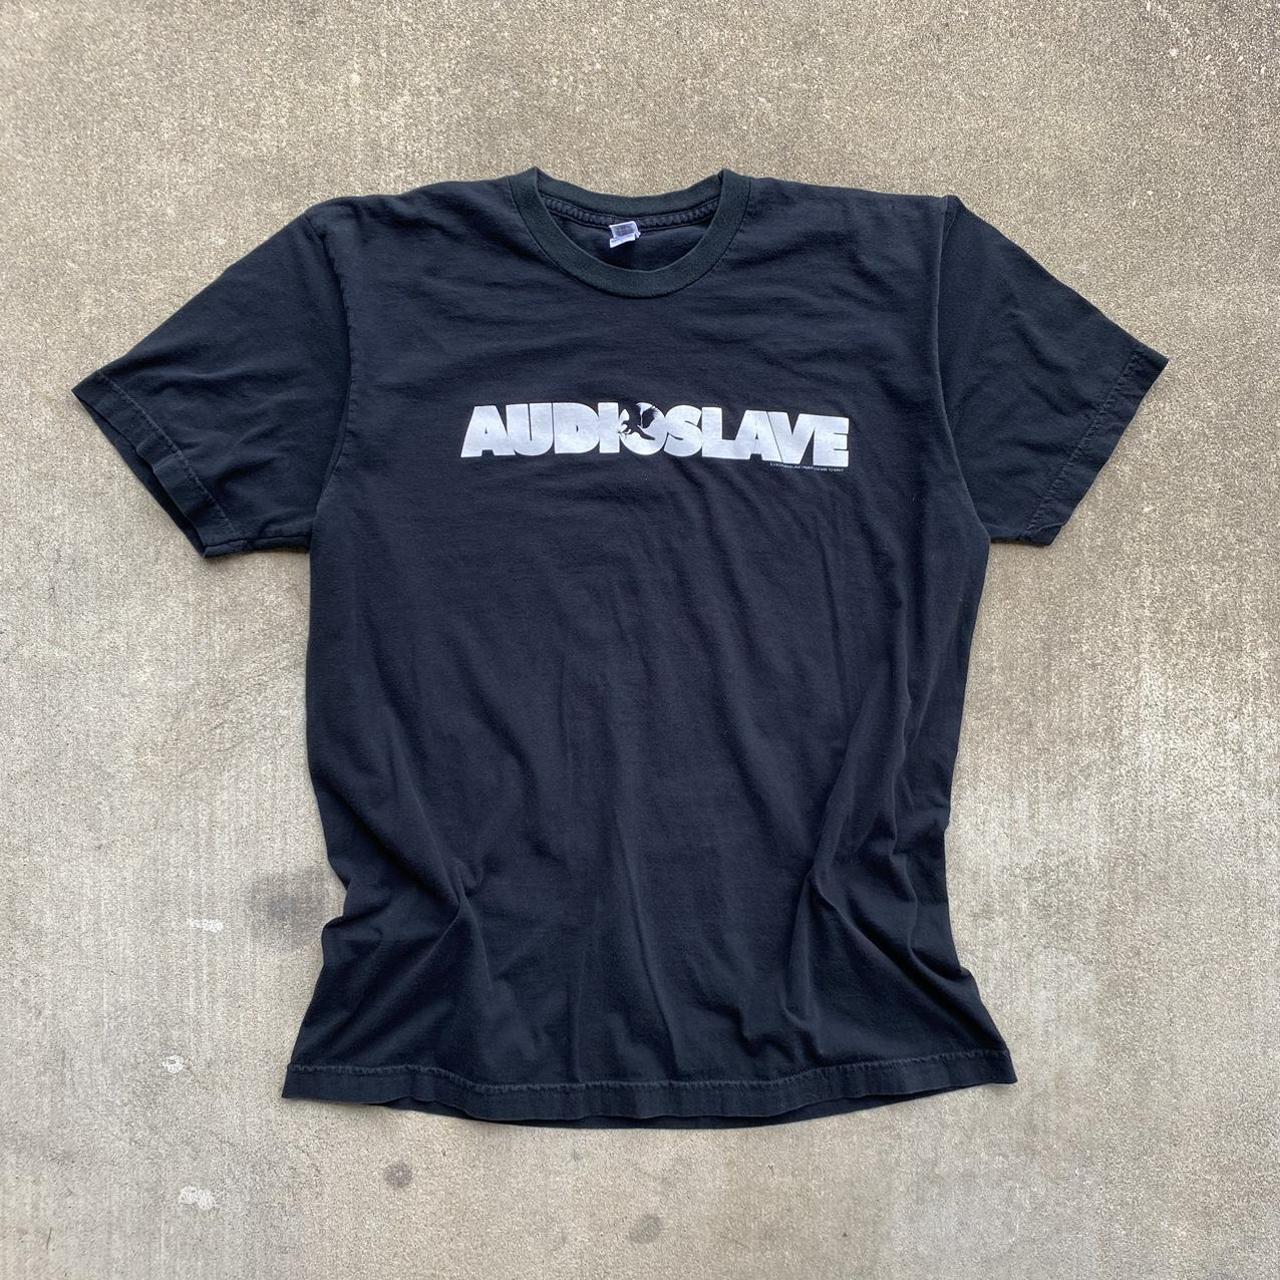 Vintage Audioslave 2003 Tour t shirt Size Large In... - Depop